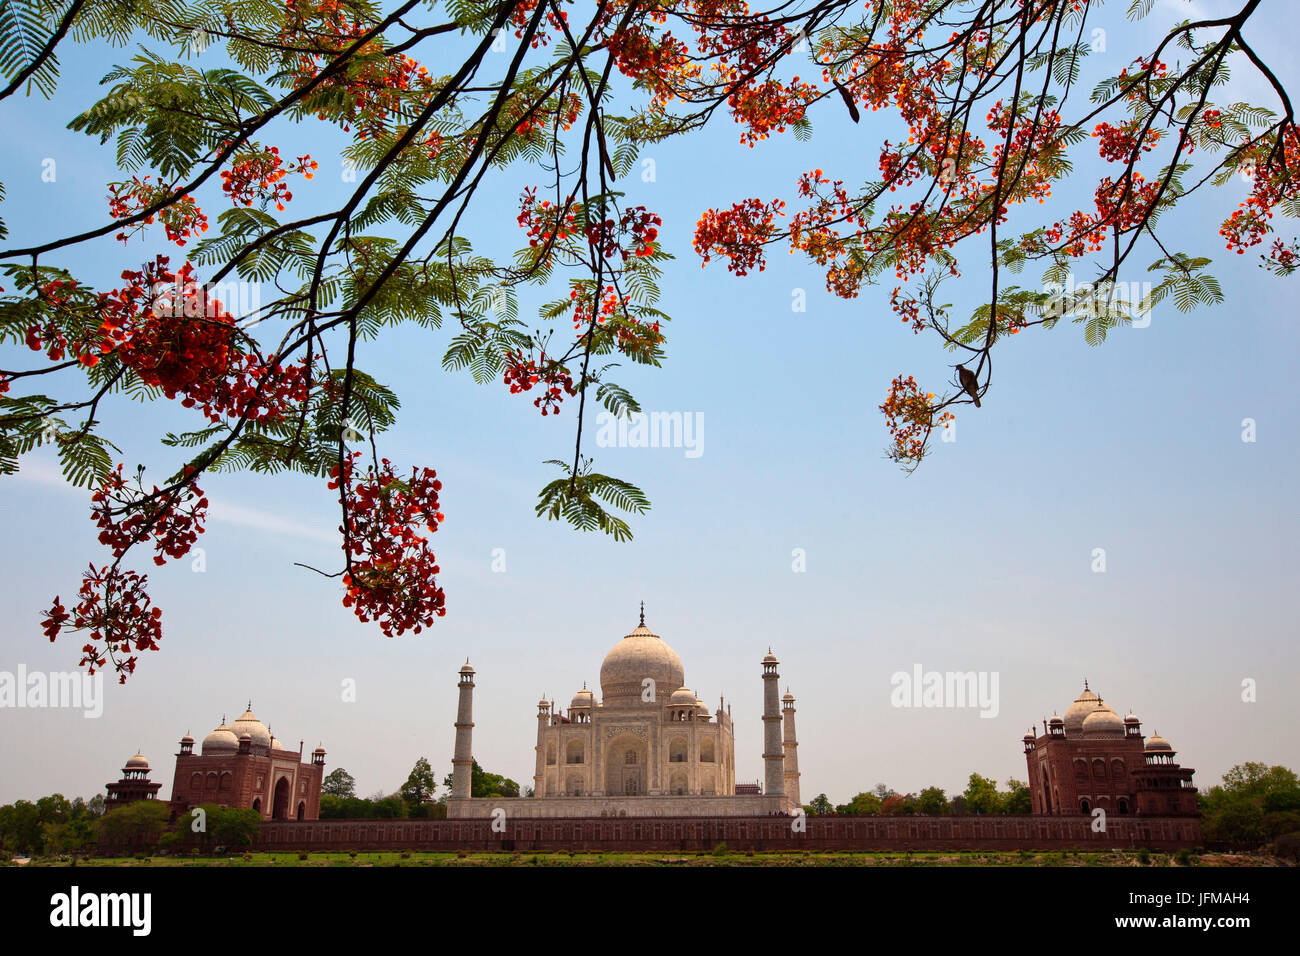 Le magnifique Taj Mahal est l'une des sept merveilles du monde et est un UNESCO World Heritage Site, c'est un mausolée de marbre blanc situé à Agra, en Inde, construit par l'empereur Moghol Shah Jahan en mémoire de sa troisième femme, Mumtaz Mahal Inde Banque D'Images